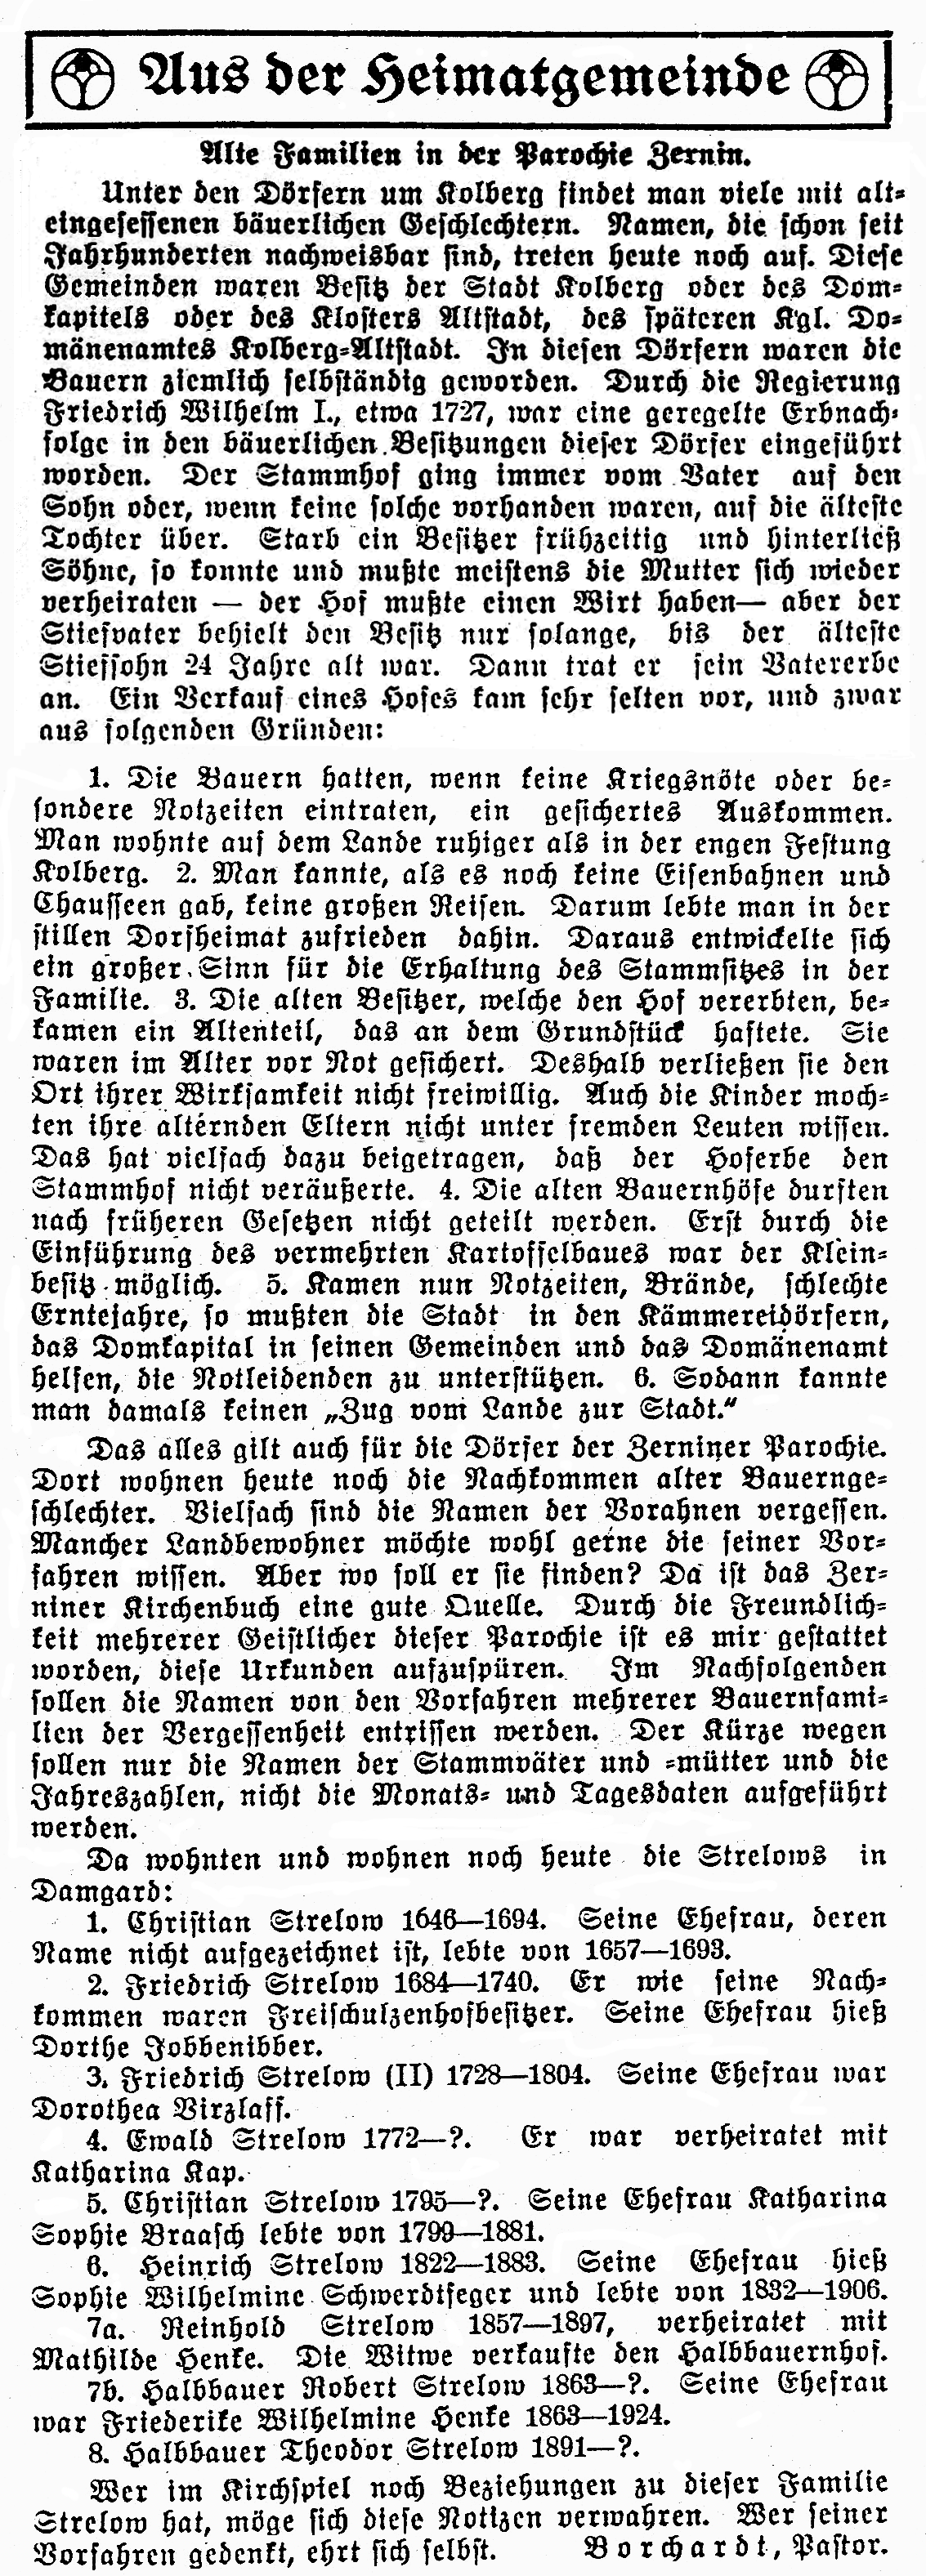 Quelle: Gemeindeblatt Zernin, Ausgabe 4/1930